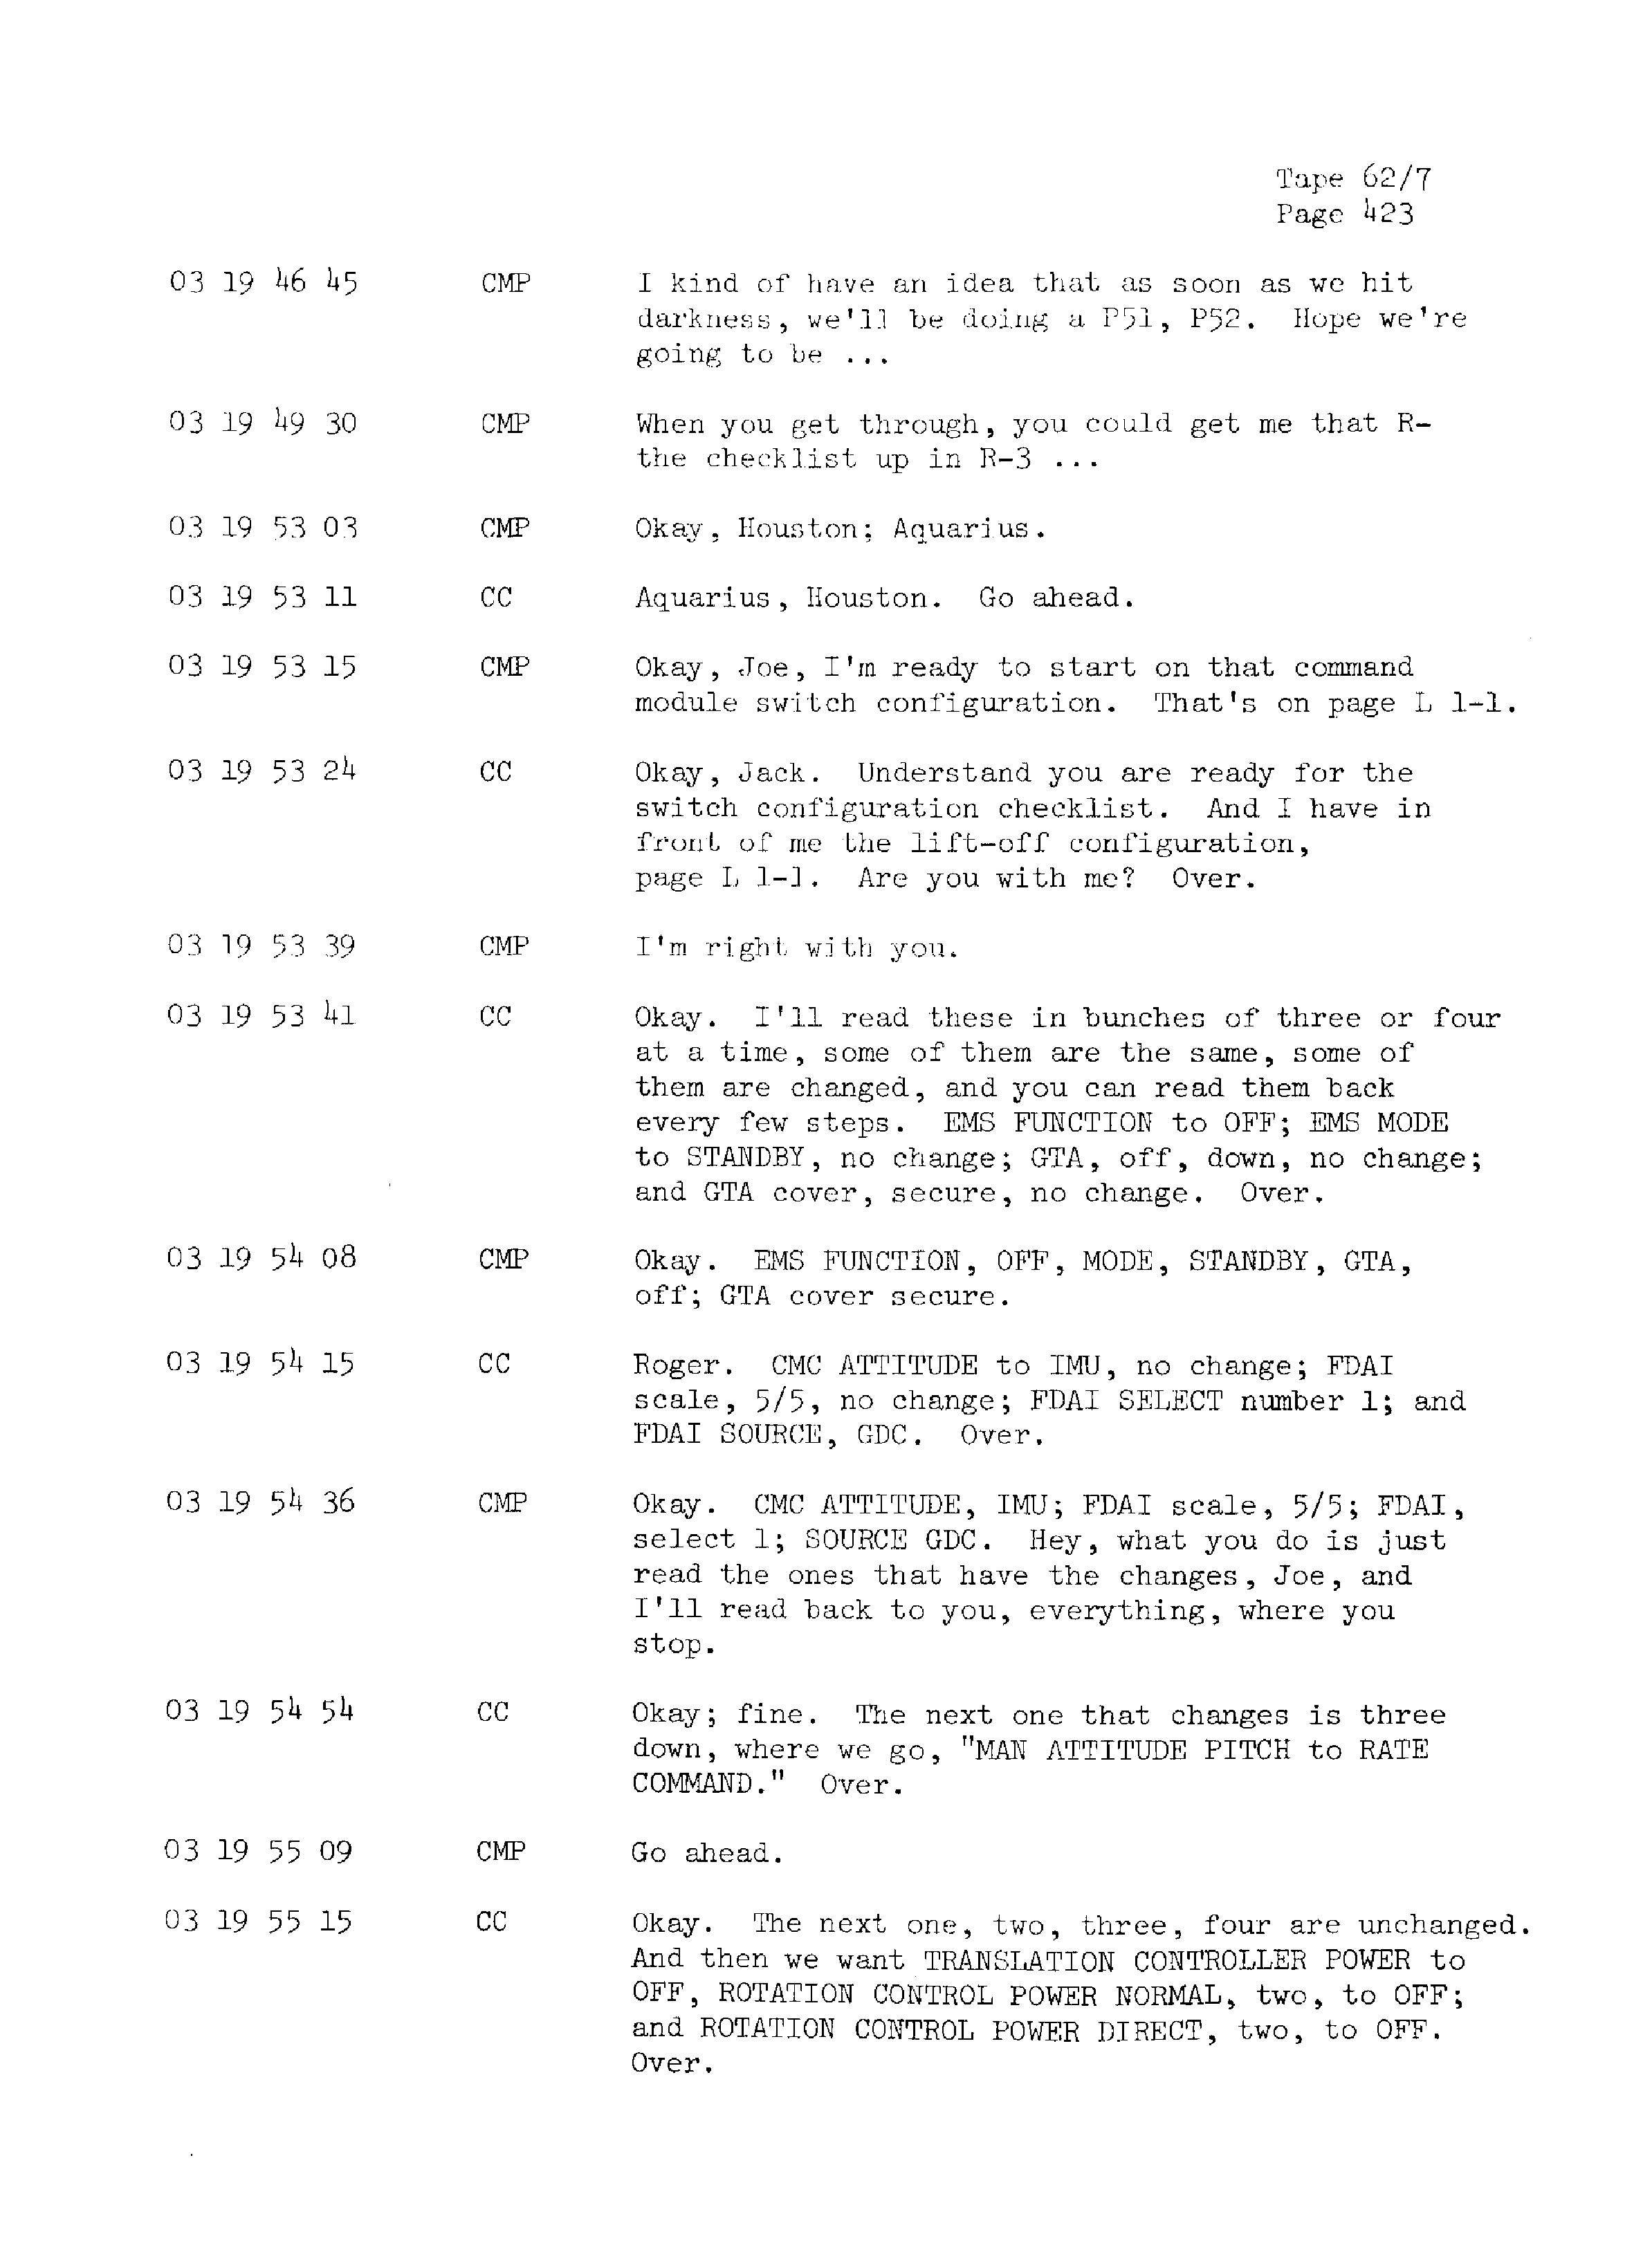 Page 430 of Apollo 13’s original transcript